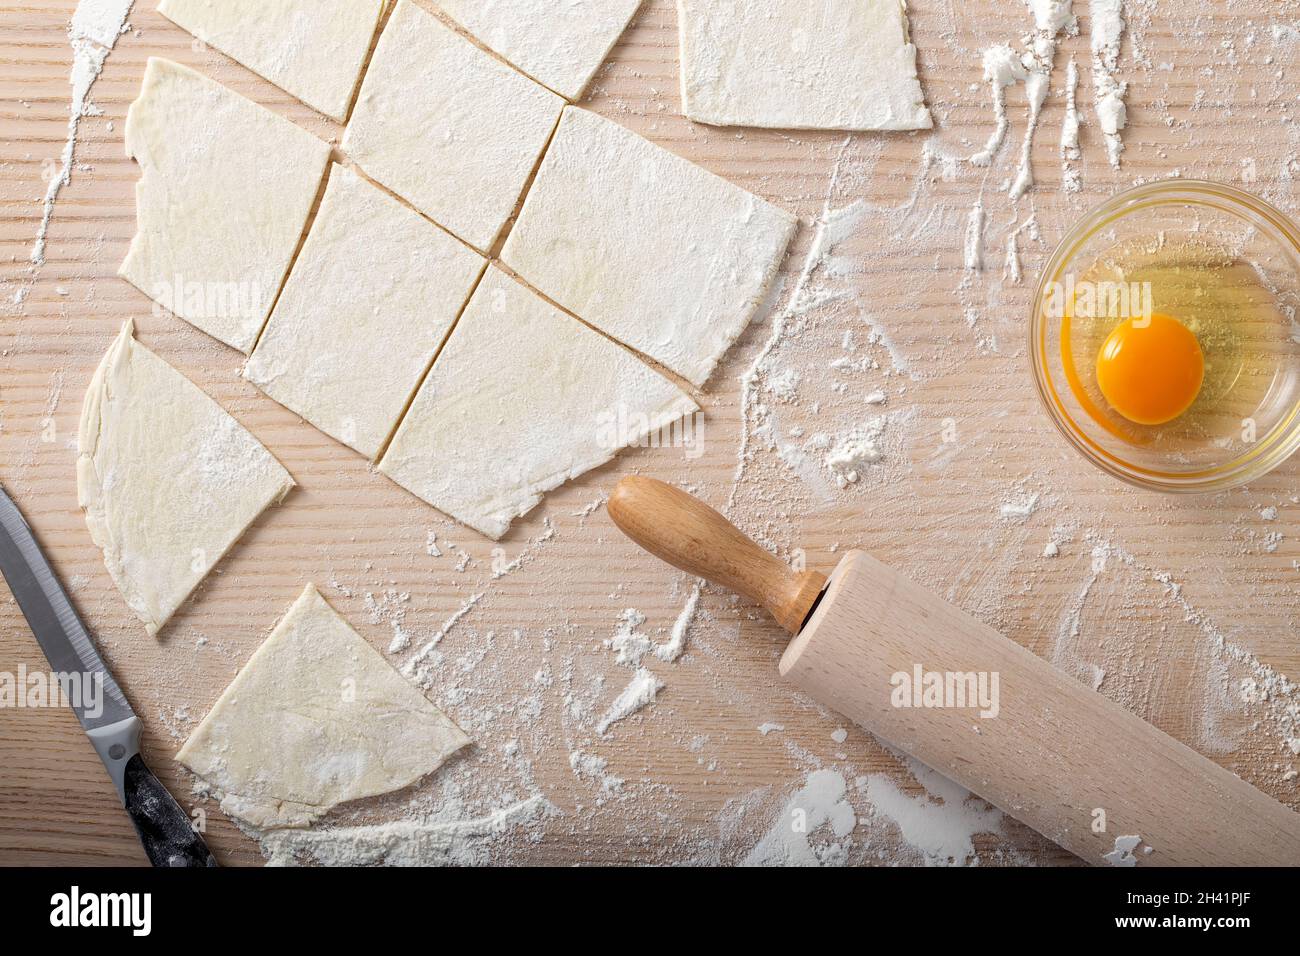 Backzutaten wie frisches Ei, Mehl und ein Nudelholz auf einem Holztisch - Draufsicht Stockfoto